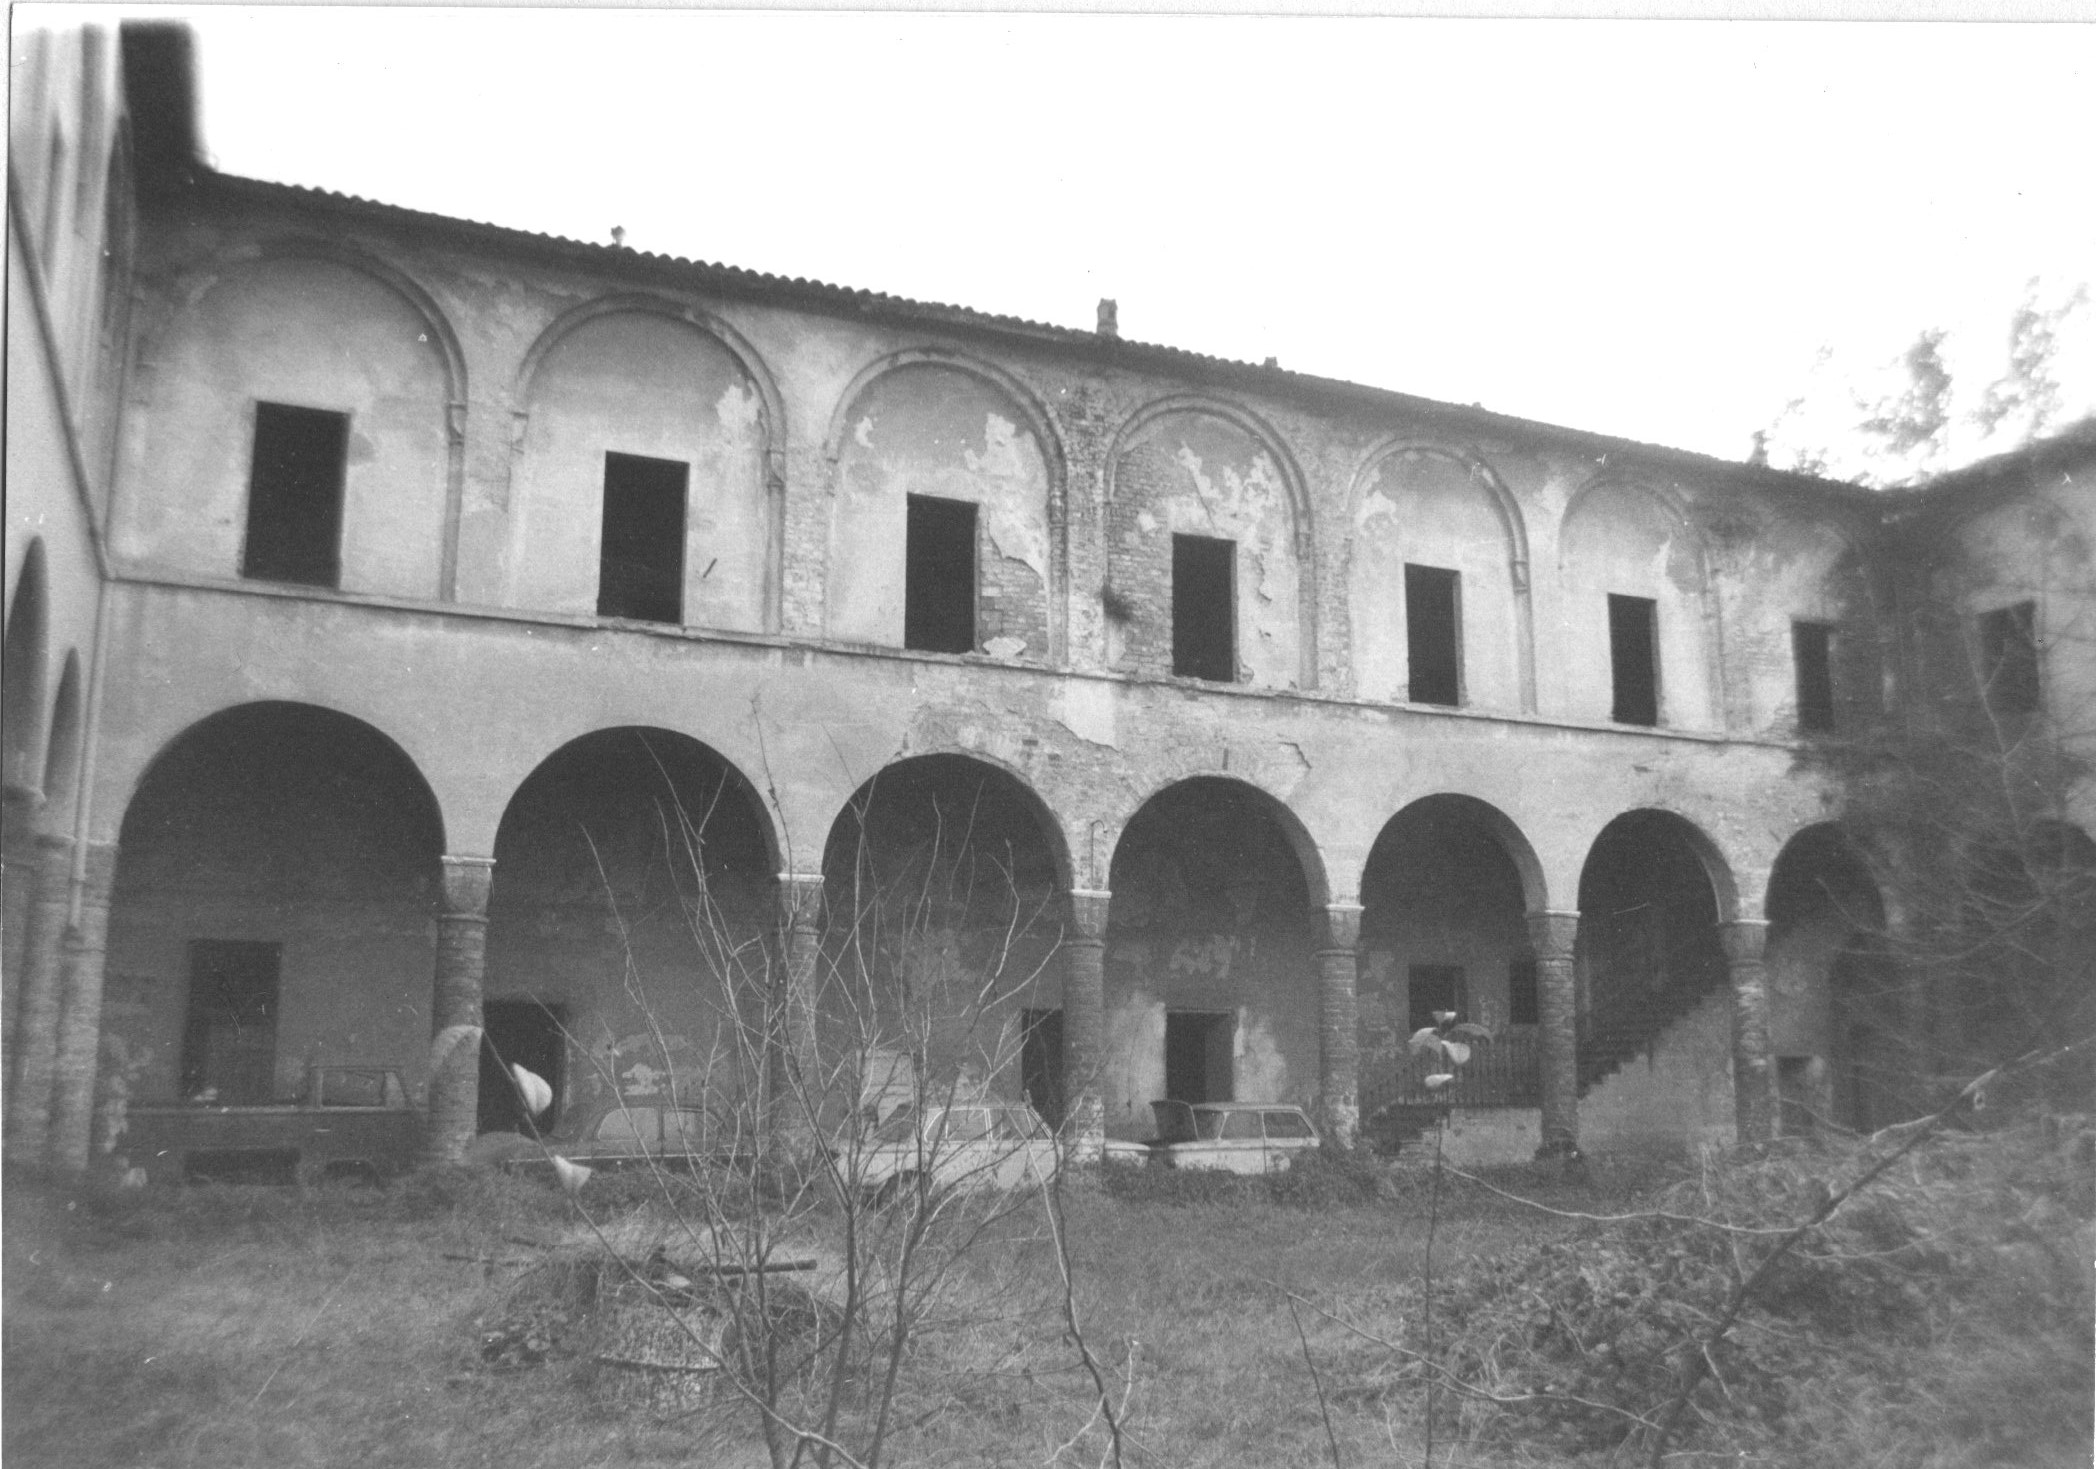 Convento del Corpus Domini, poi Caserma militare (caserma) - Cremona (CR) 